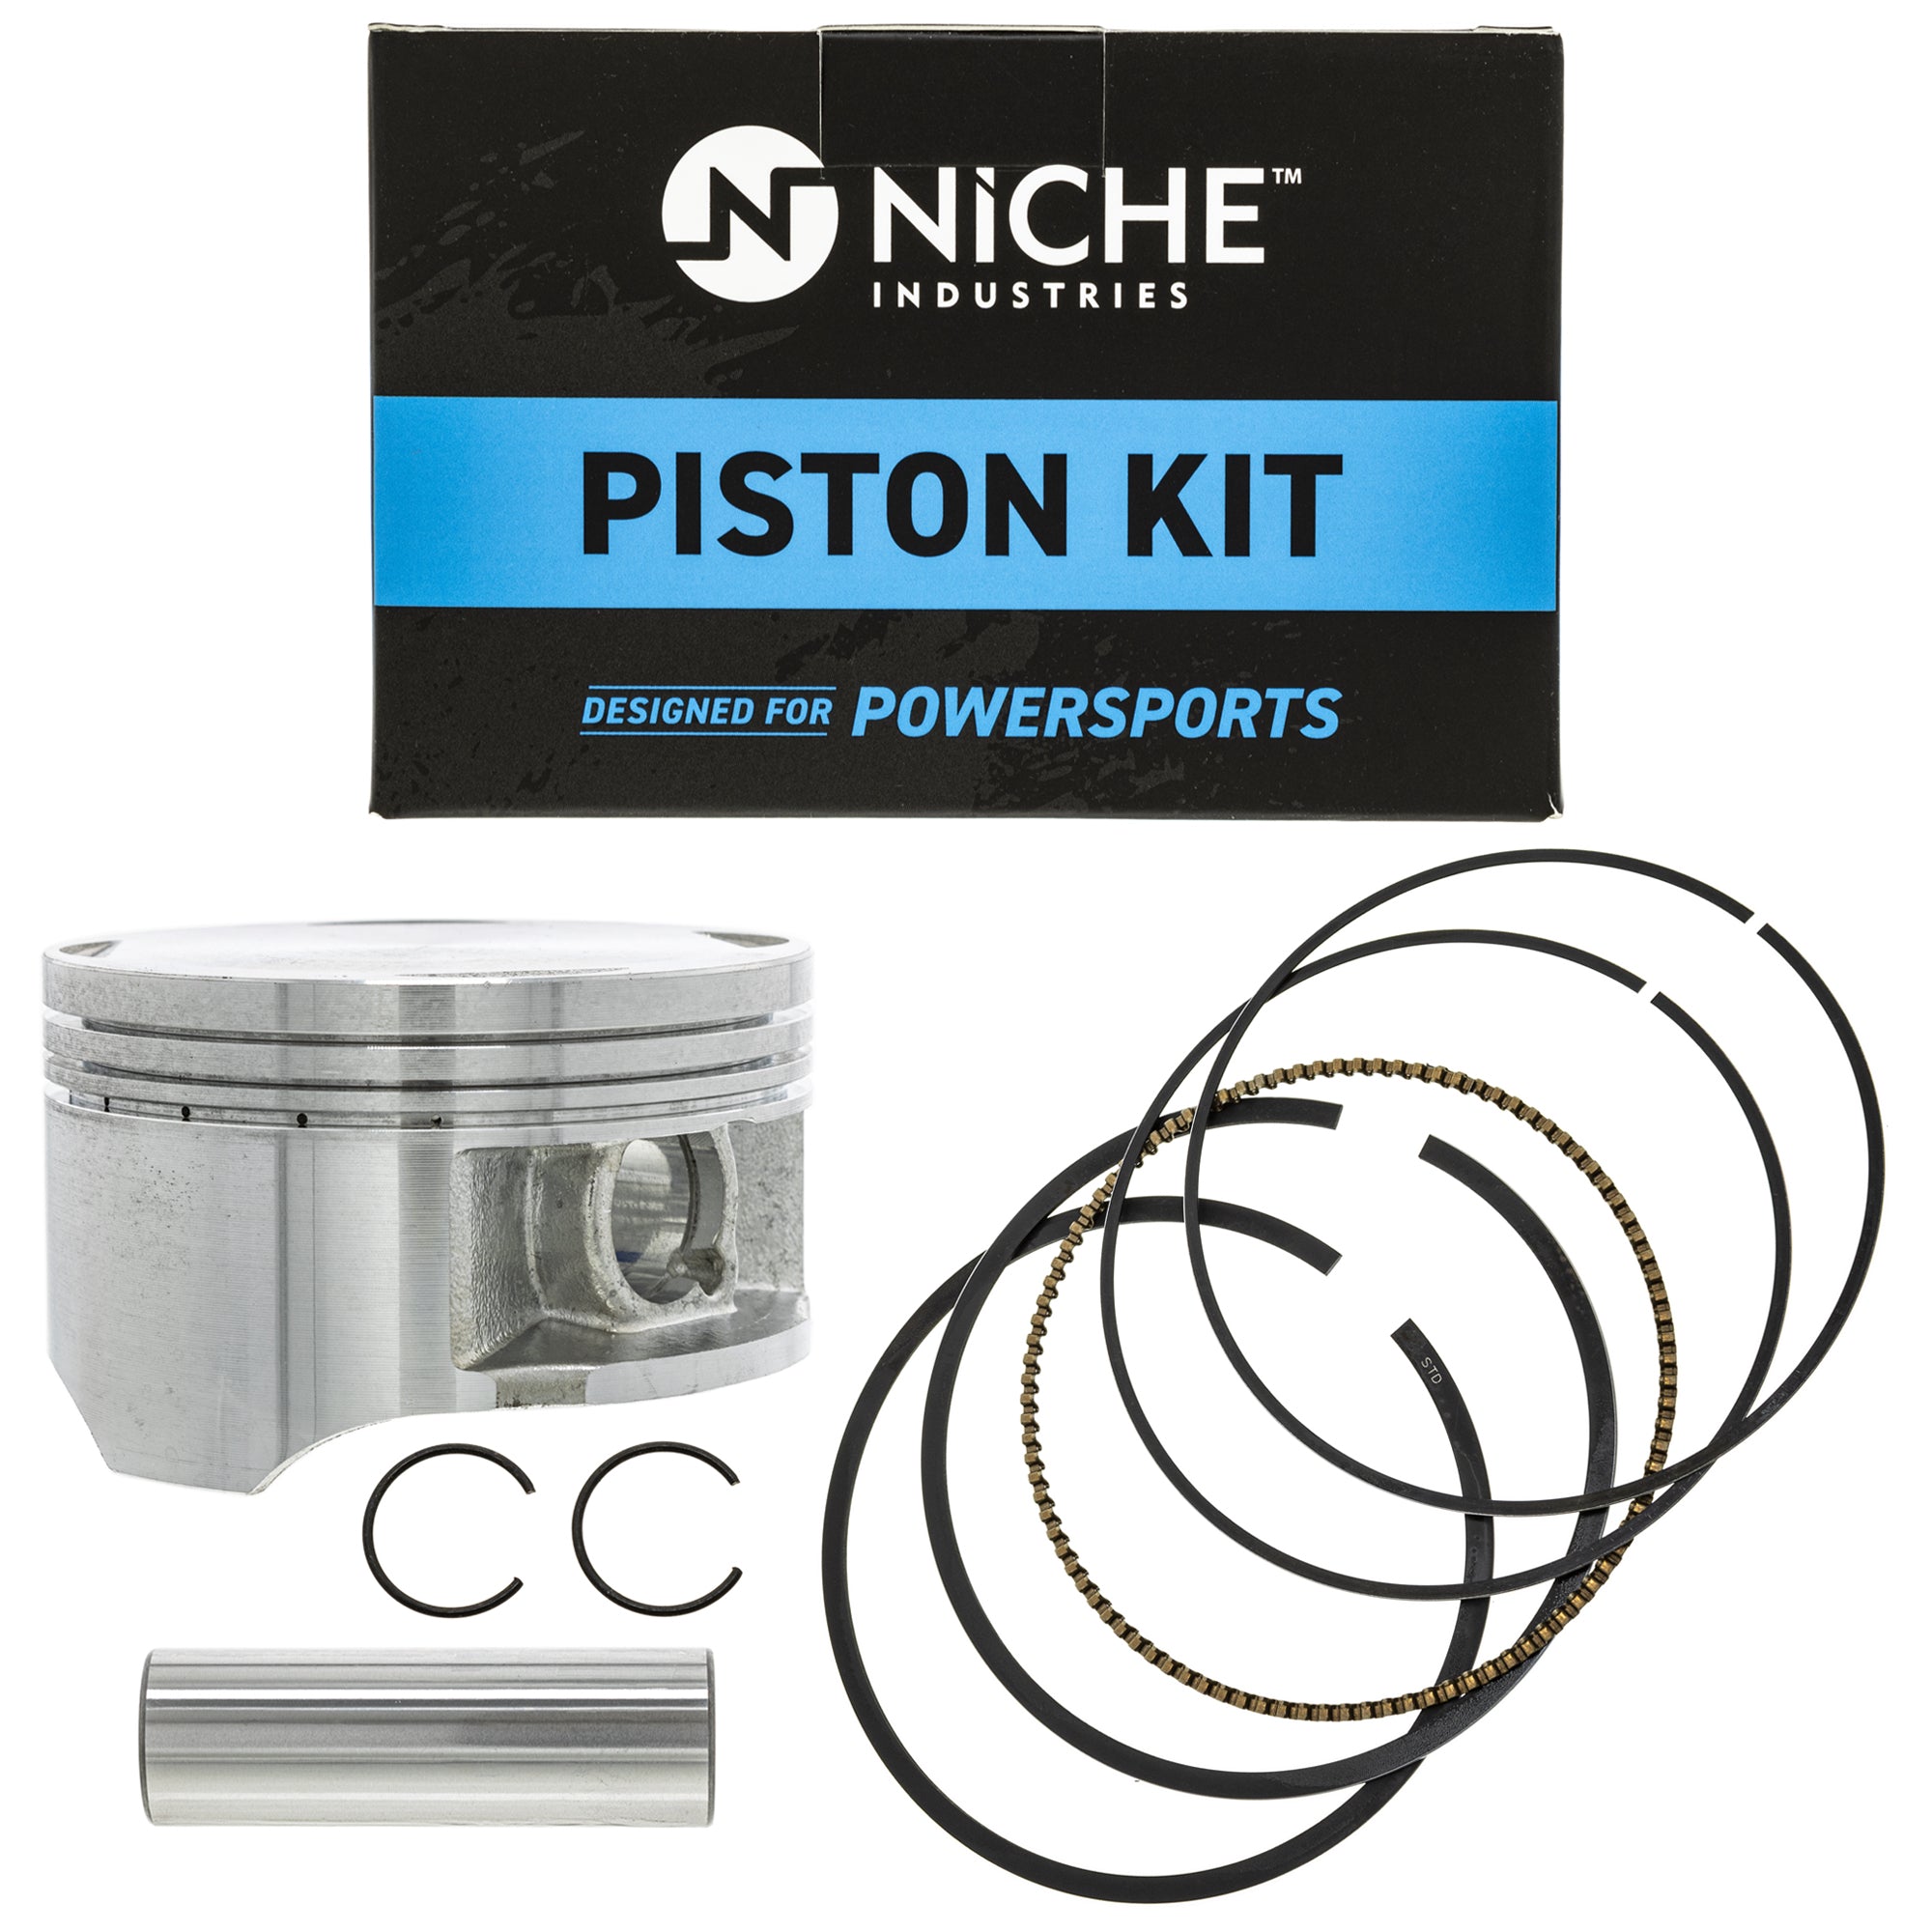 Cylinder Piston Camshaft Plug for Honda Sportrax XR400R 12391-KCY-671